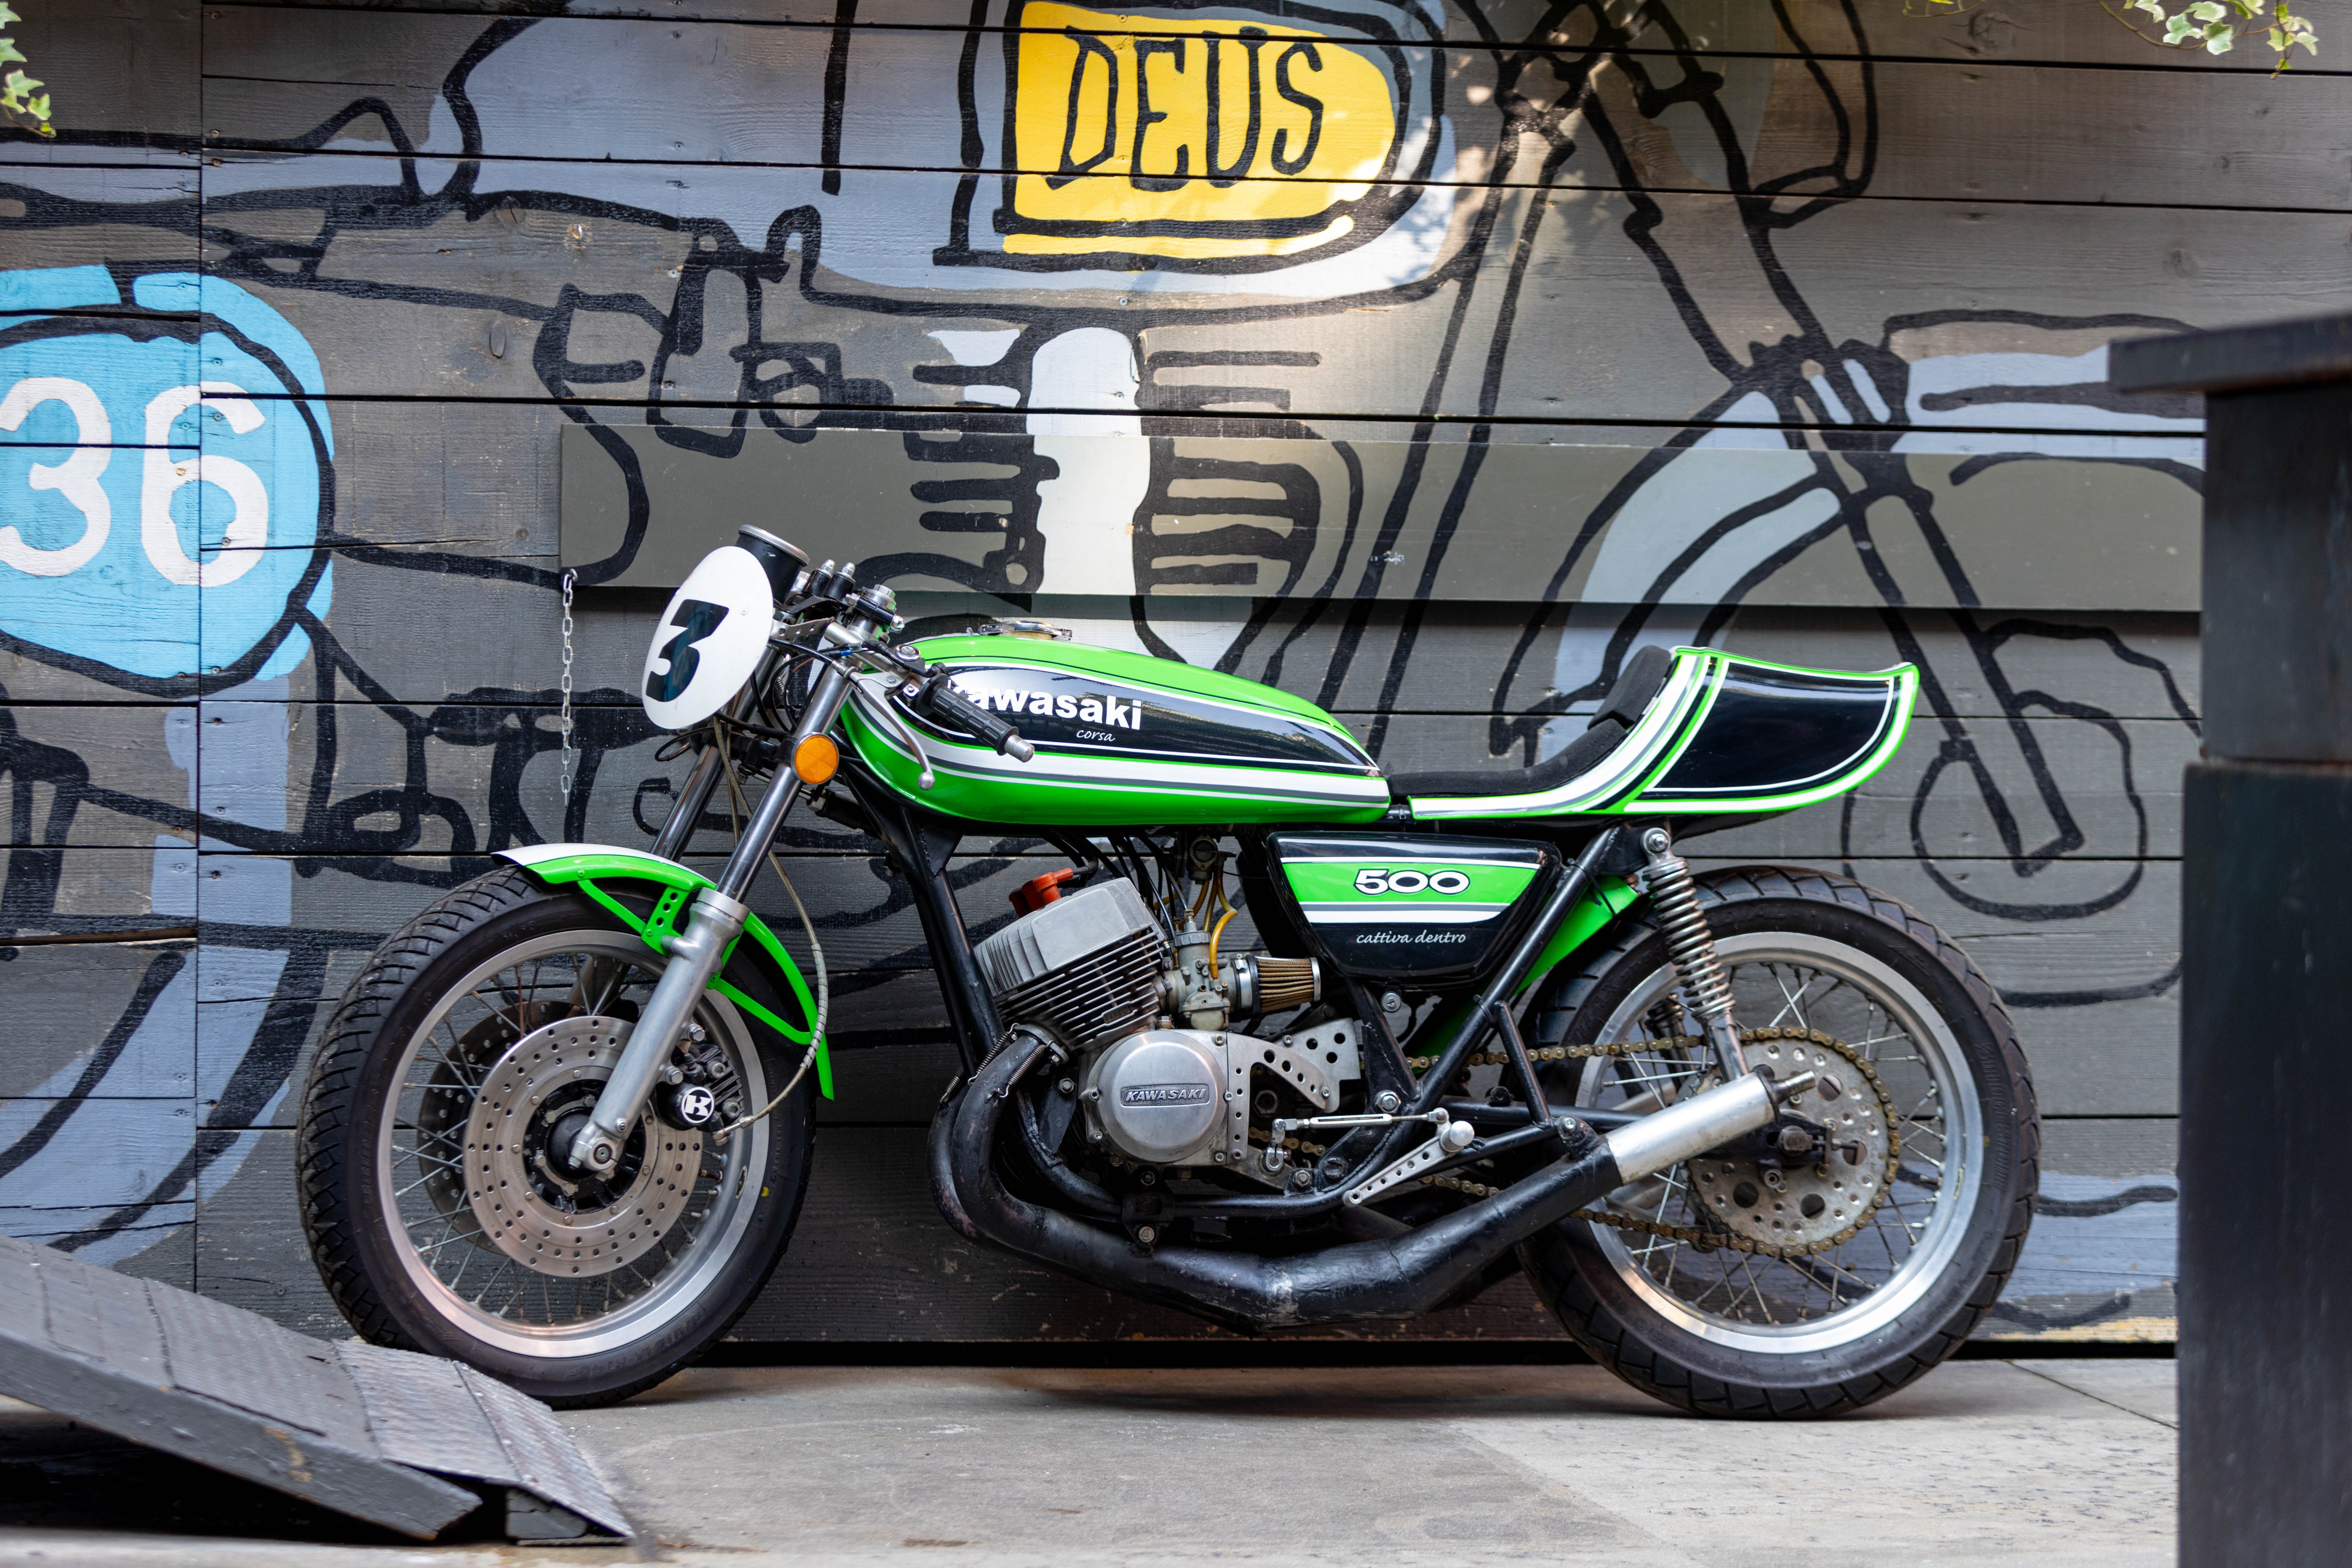 A Kawasaki 500 by Deus